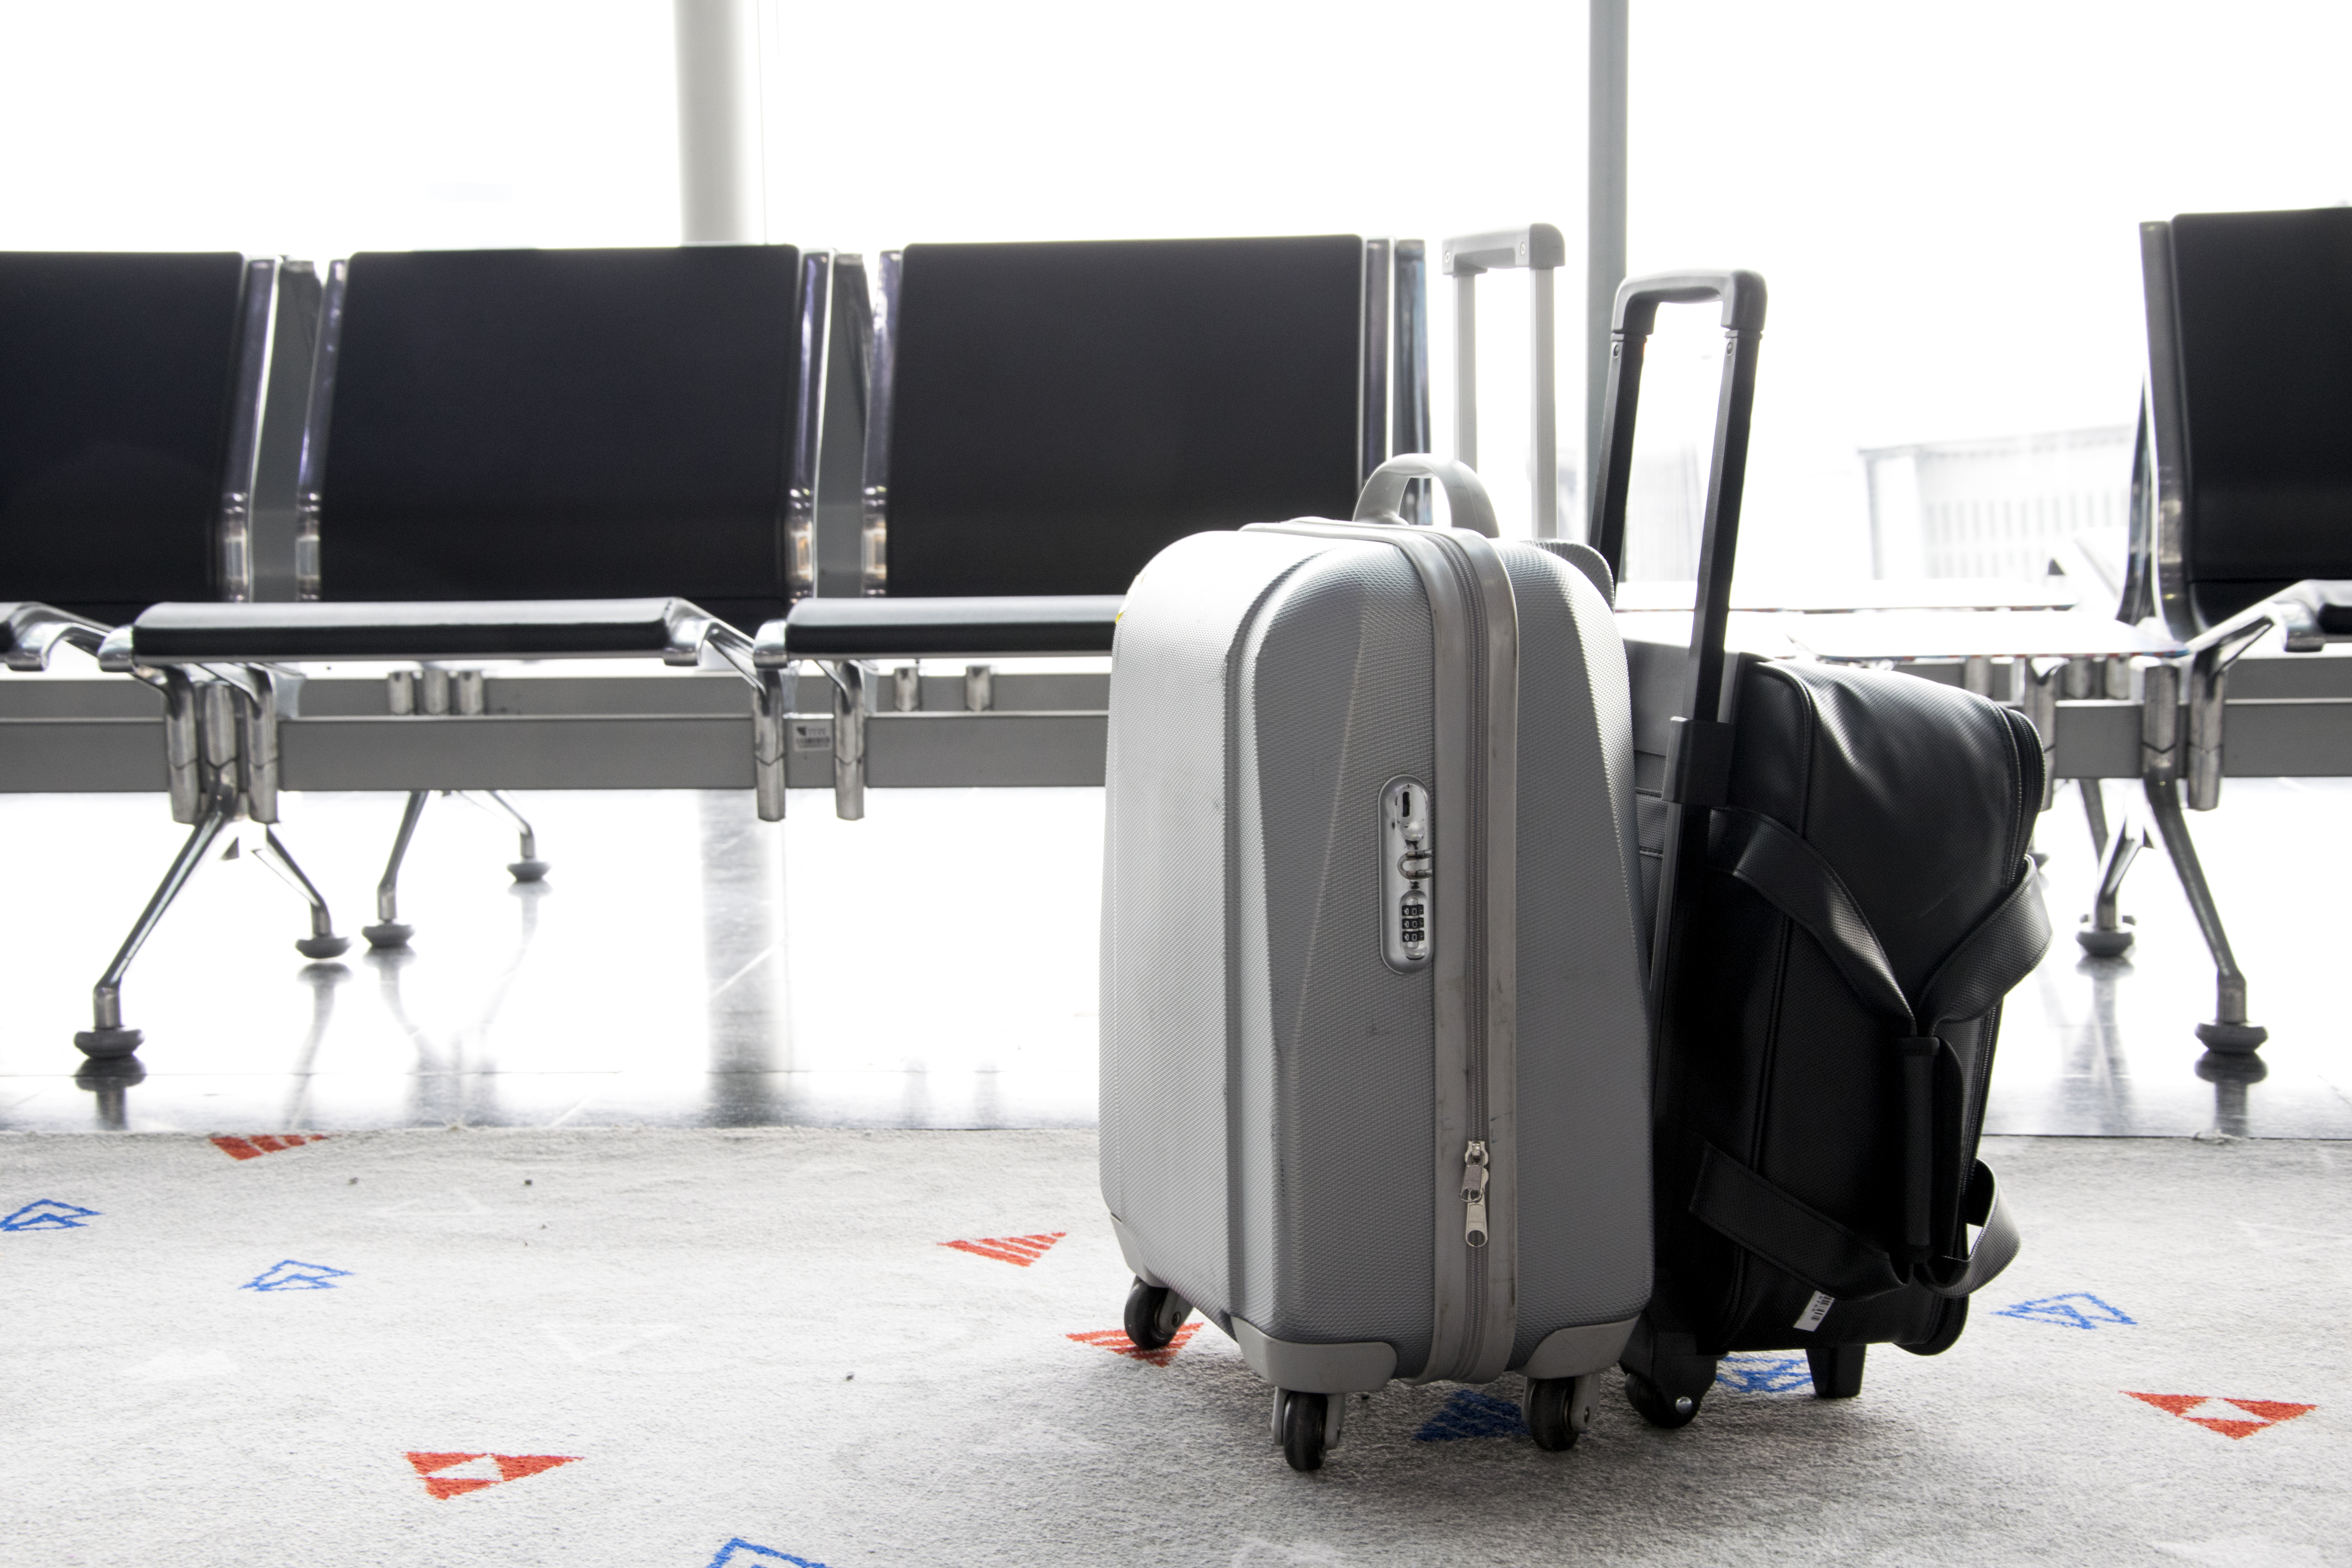 Identifica tu equipaje para que sea más fácil encontrarlo ene l aeropuerto